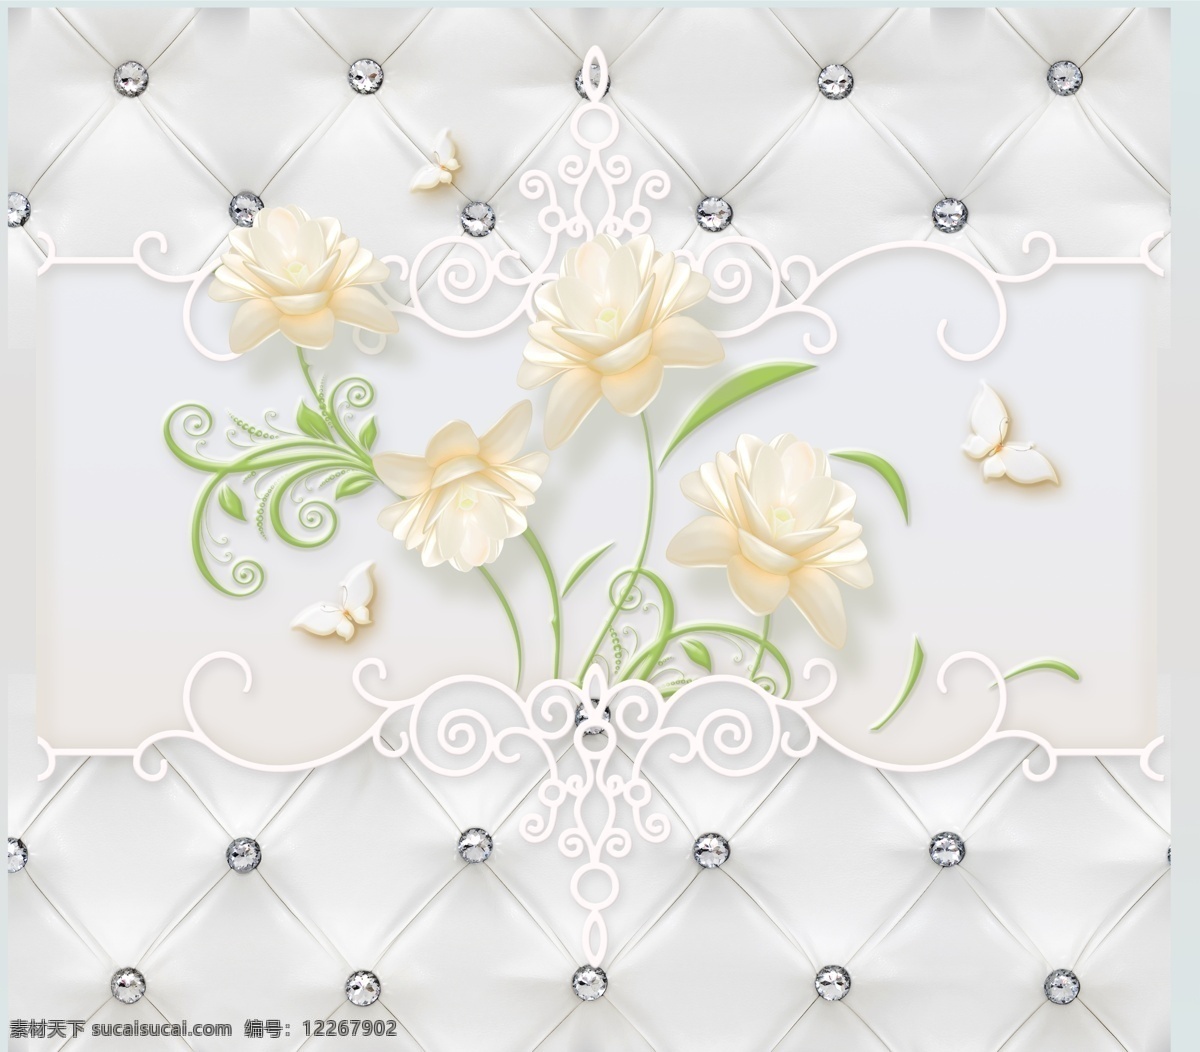 浮雕 花朵 软 包 蝴蝶 软包 背景墙 分享图 分层